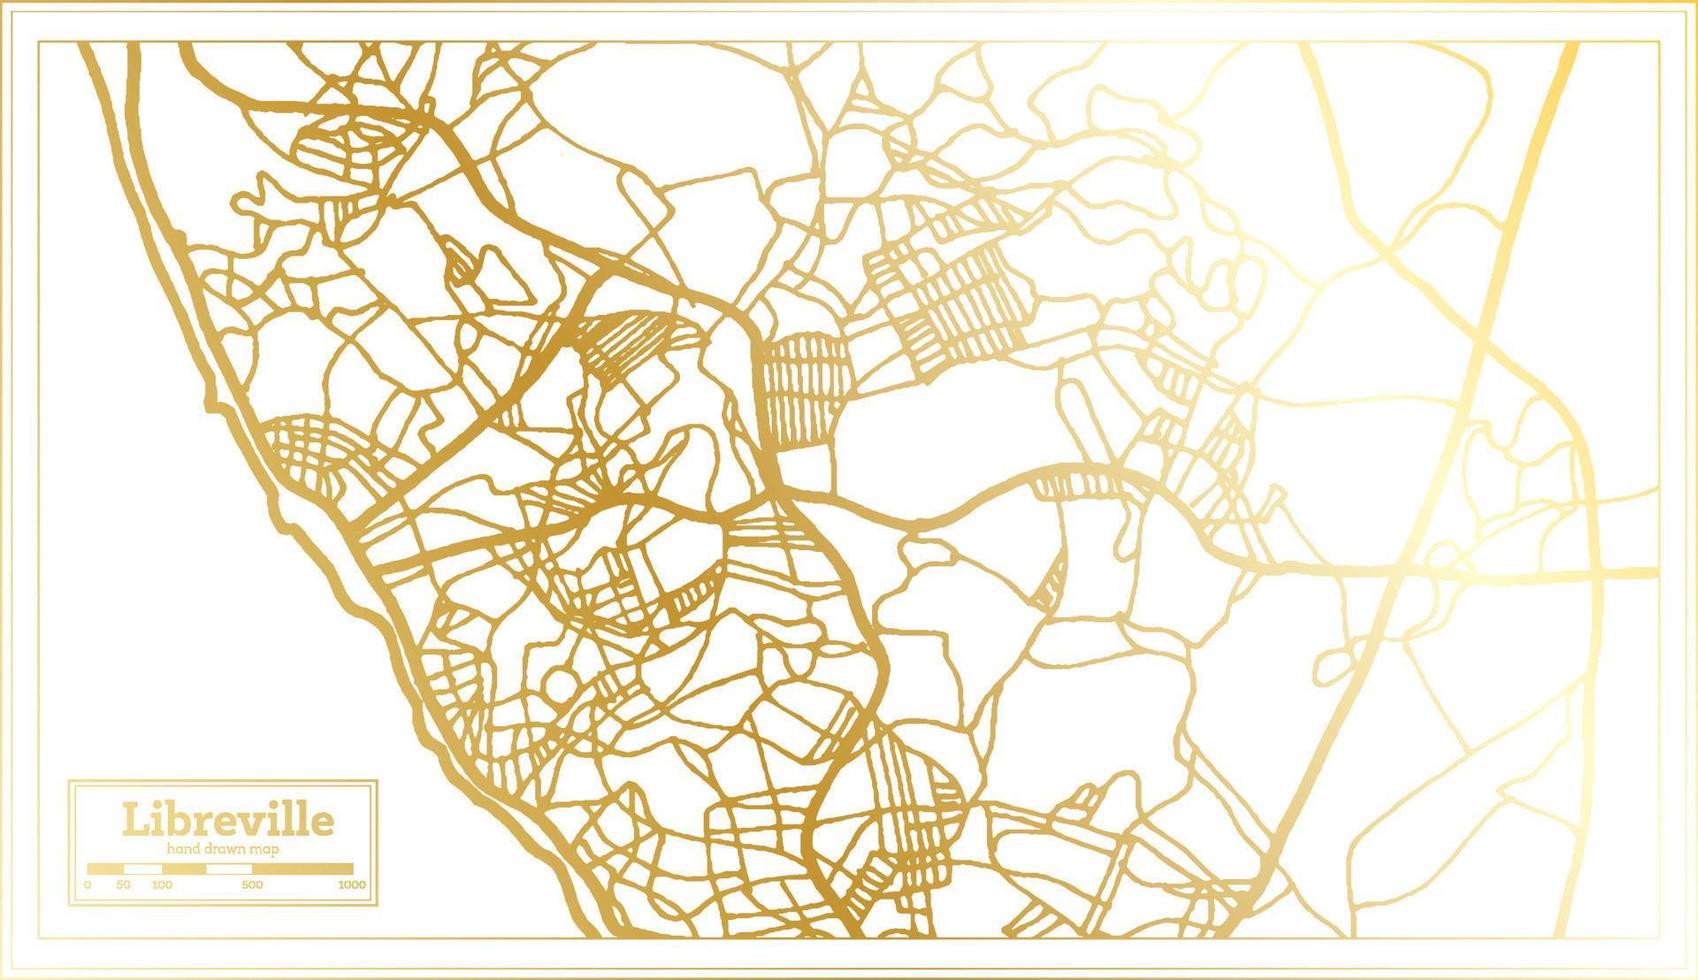 plan de la ville de libreville gabon dans un style rétro de couleur dorée. carte muette. vecteur